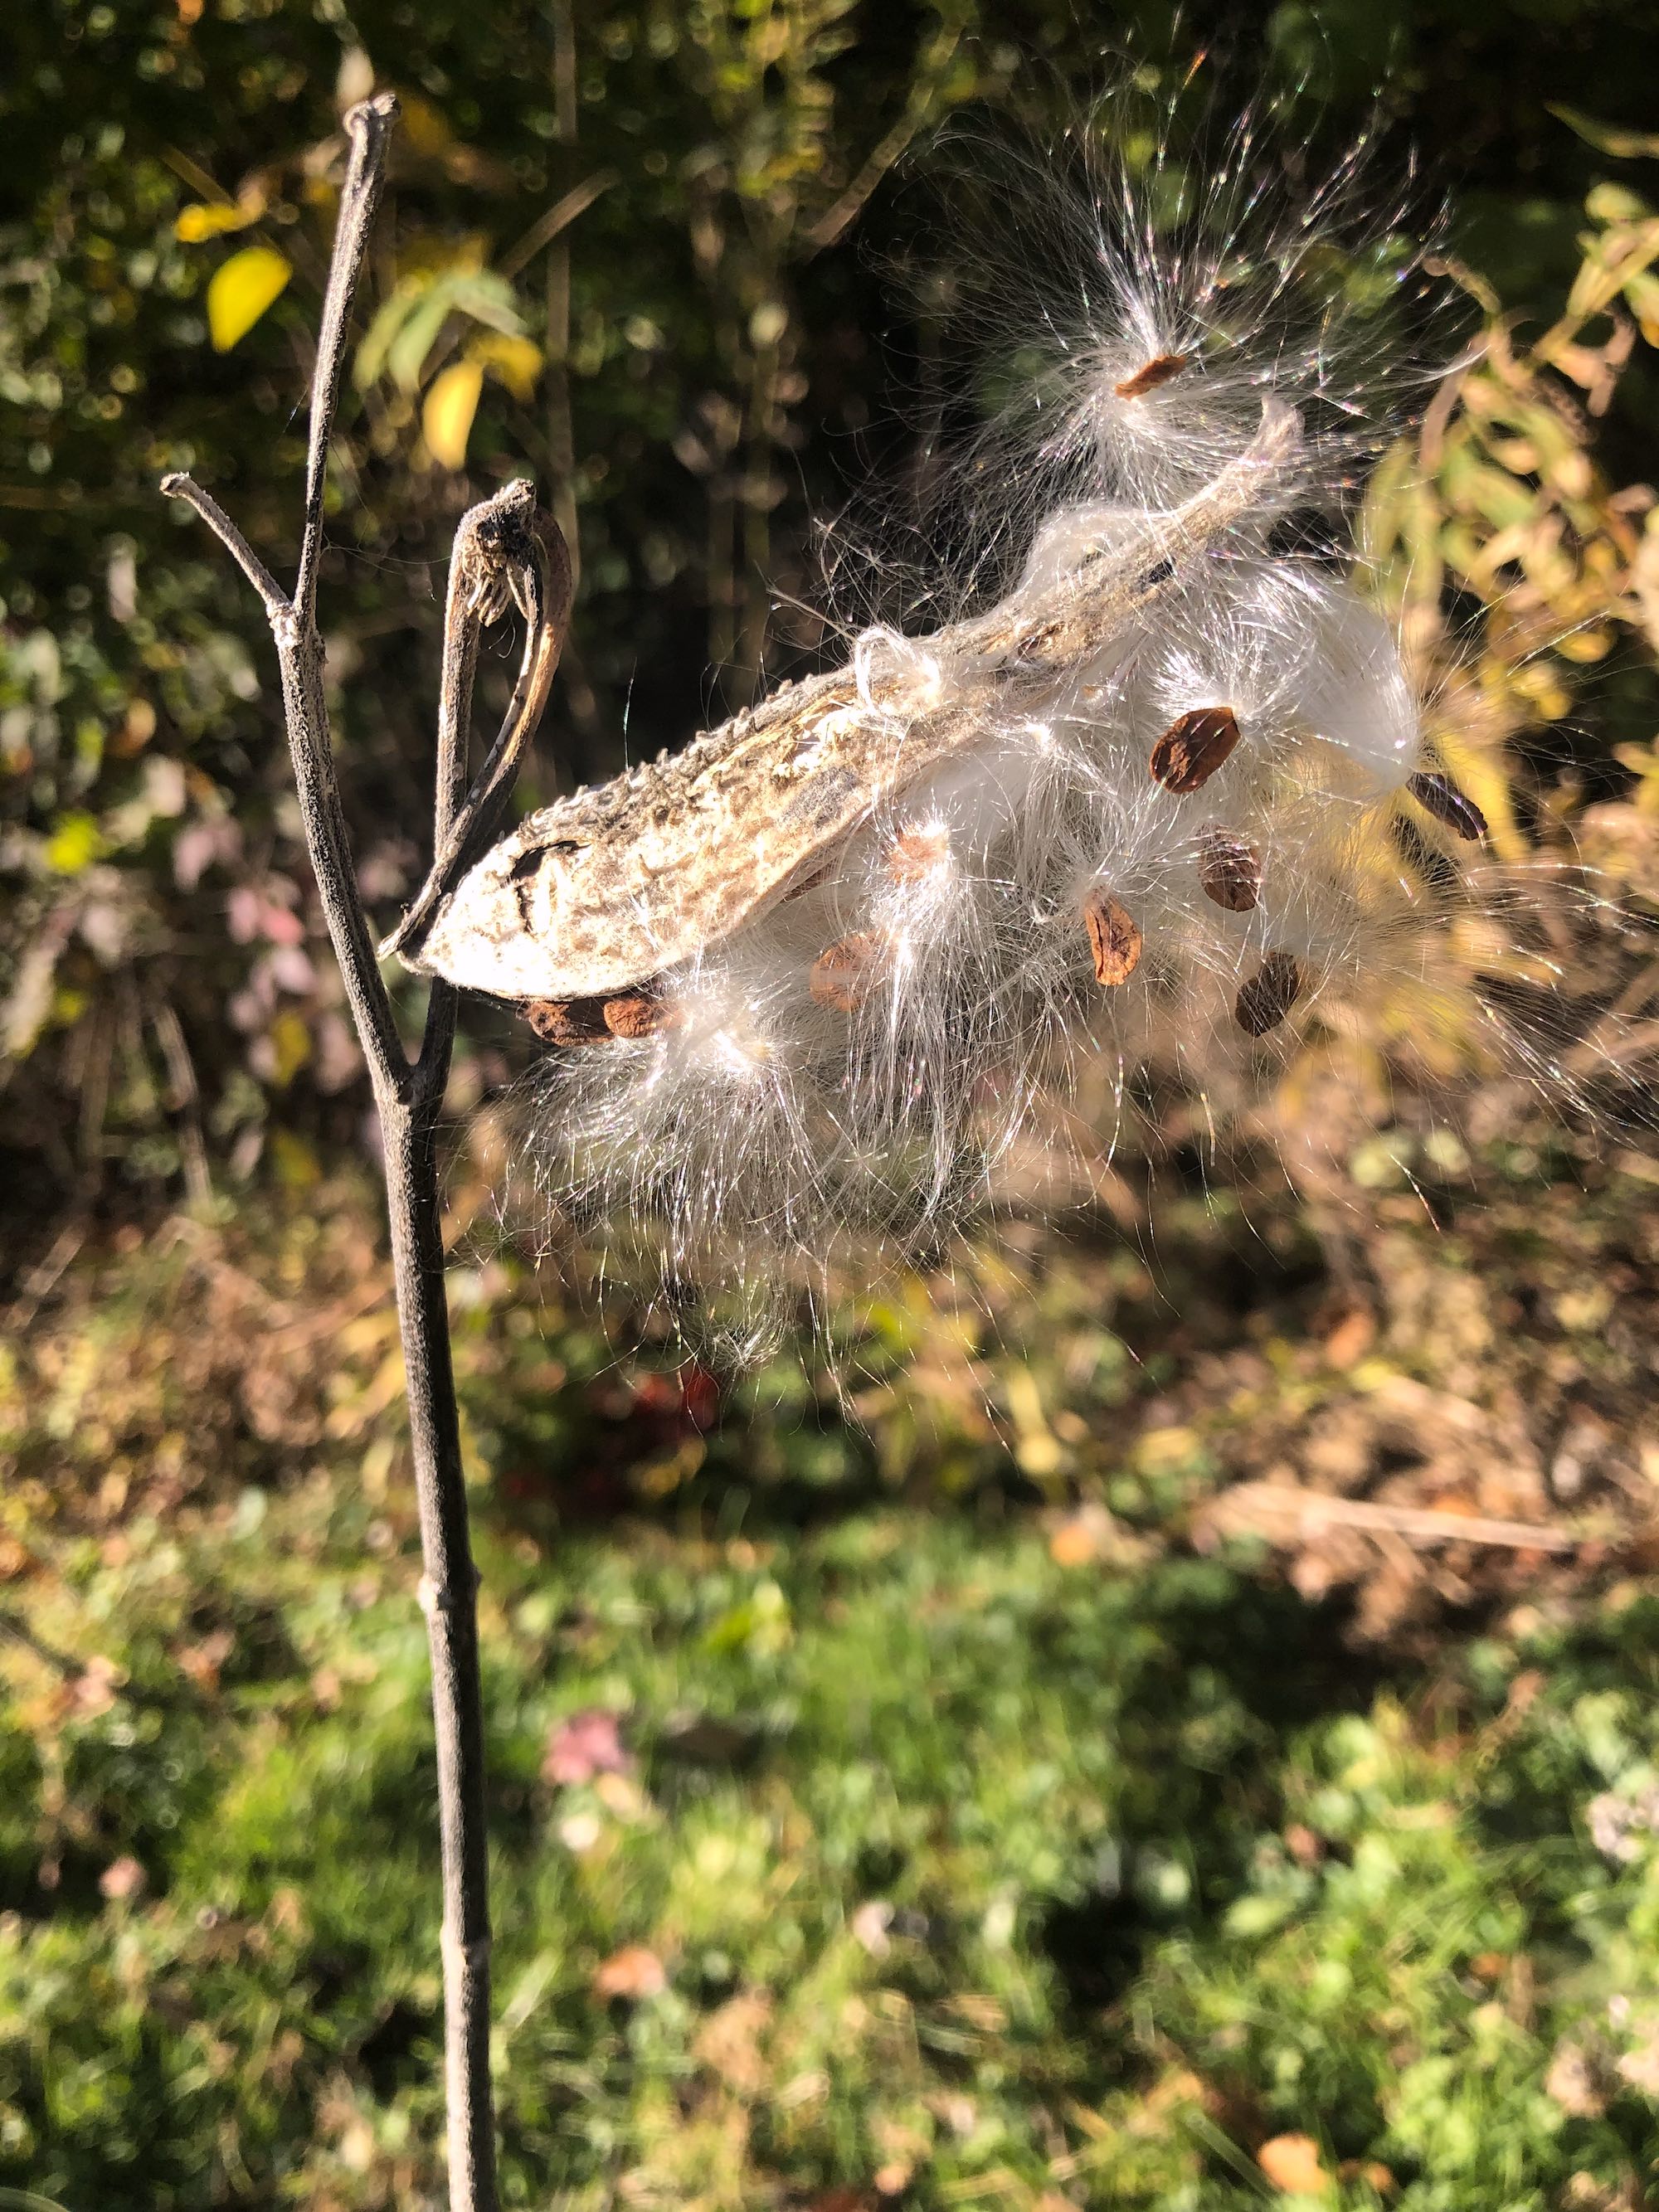 Common Milkweed in UW Arboretum on October 13, 2020.